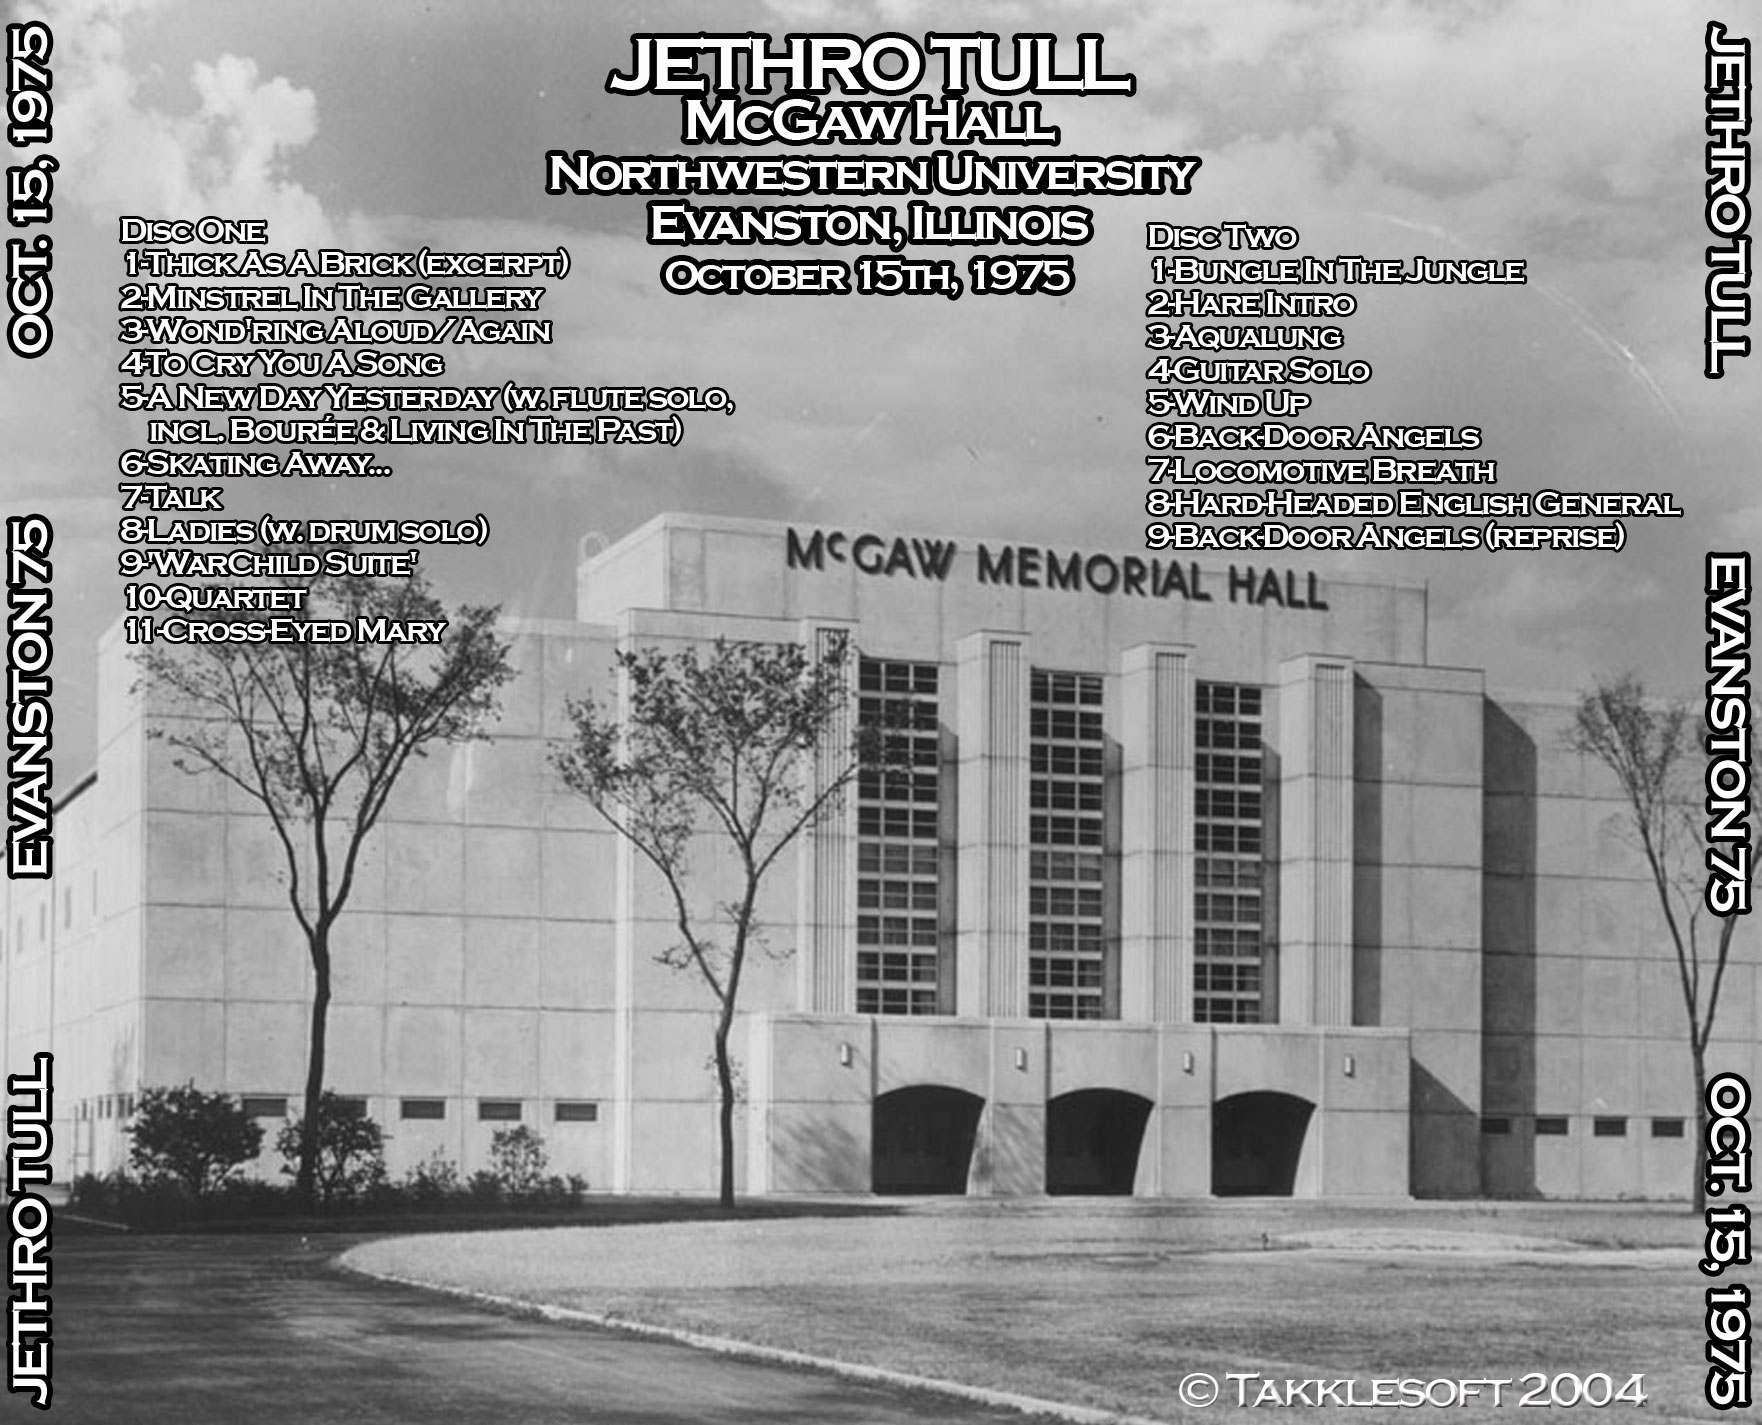 JethroTull1975-10-15NorthwesternUniversityEvanstonIL (1).jpg